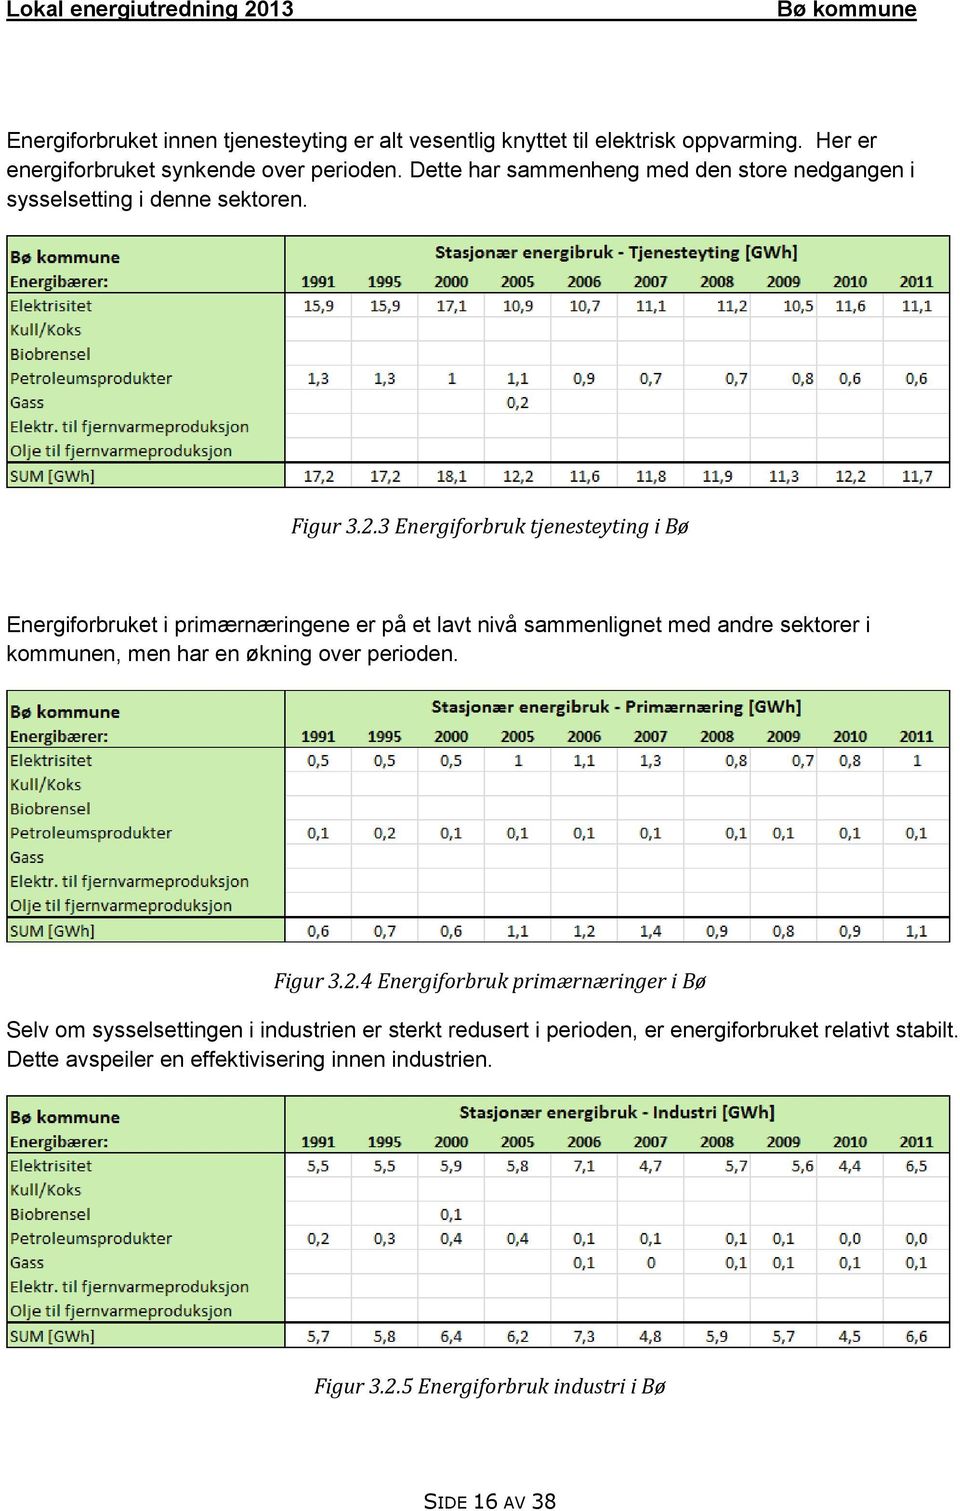 3 Energiforbruk tjenesteyting i Bø Energiforbruket i primærnæringene er på et lavt nivå sammenlignet med andre sektorer i kommunen, men har en økning over